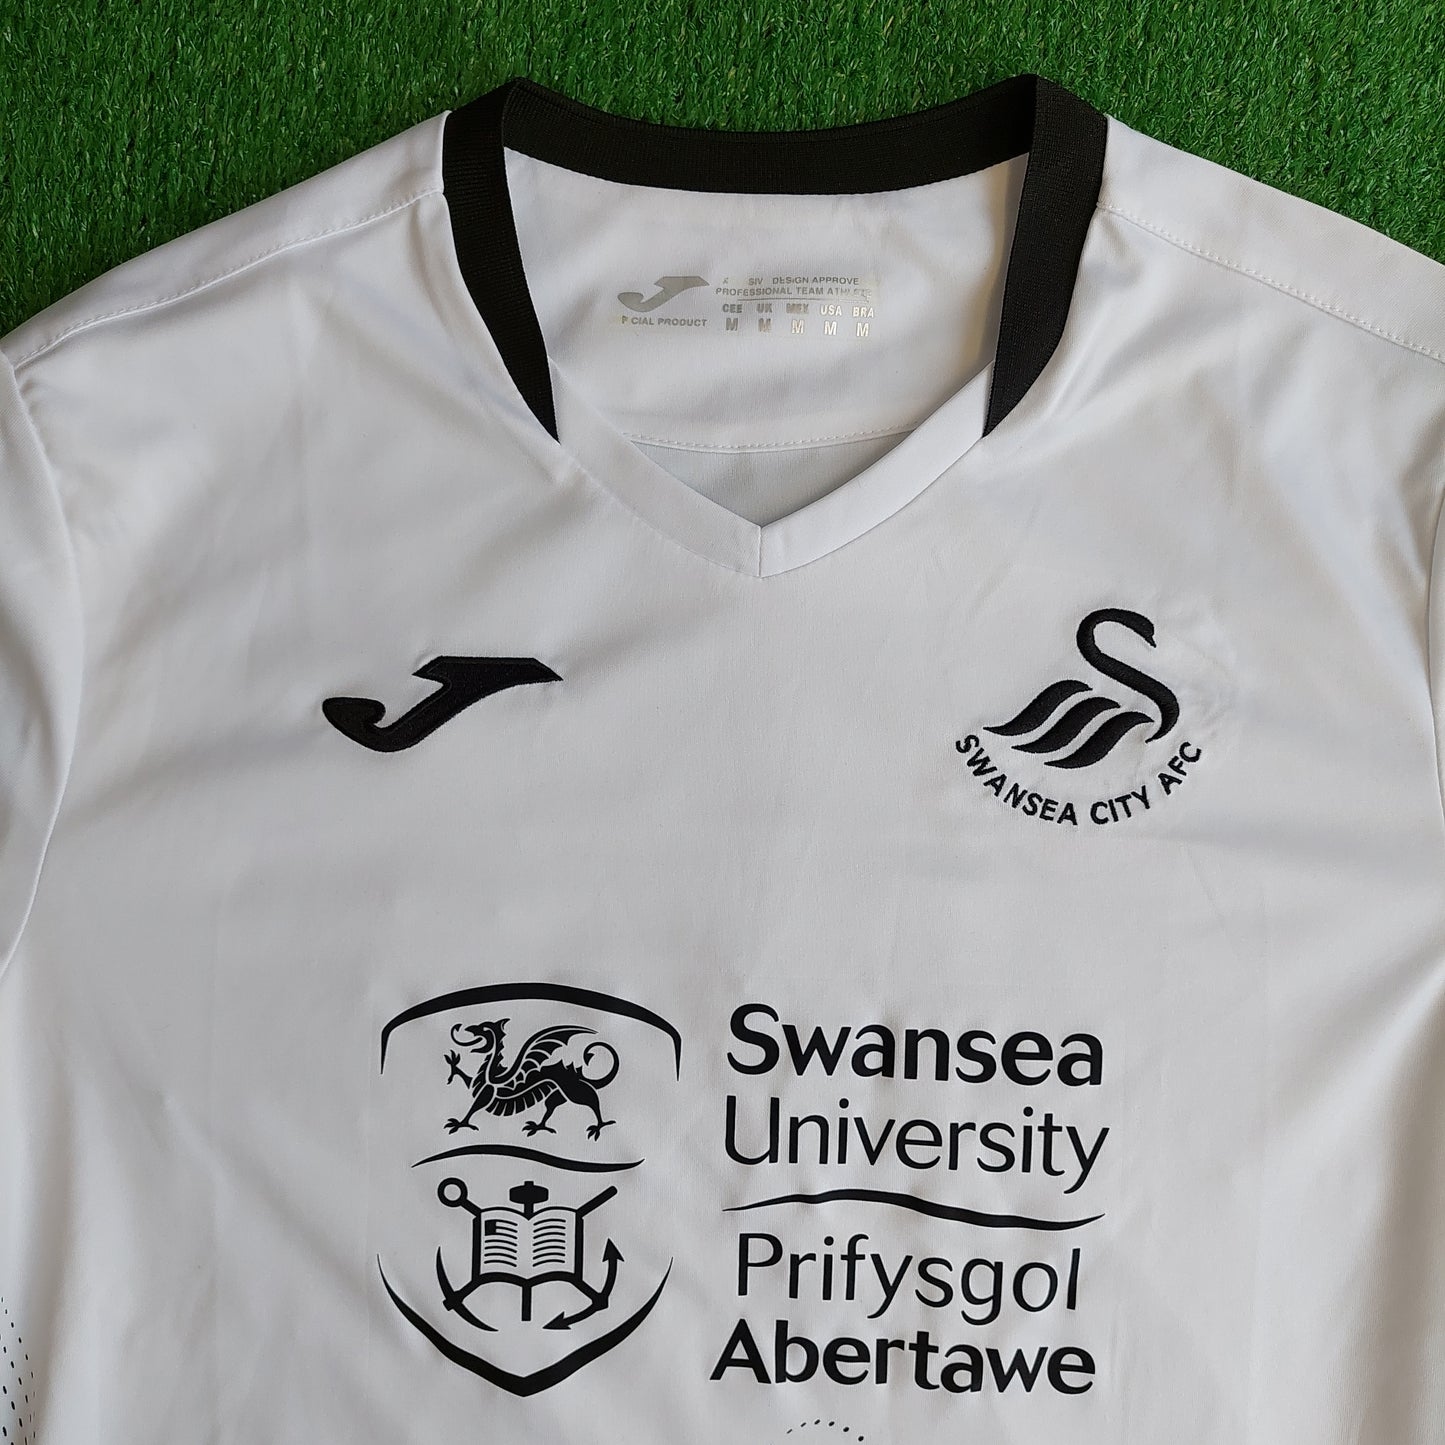 Swansea City 2020/21 Home Shirt (Excellent) - Size M